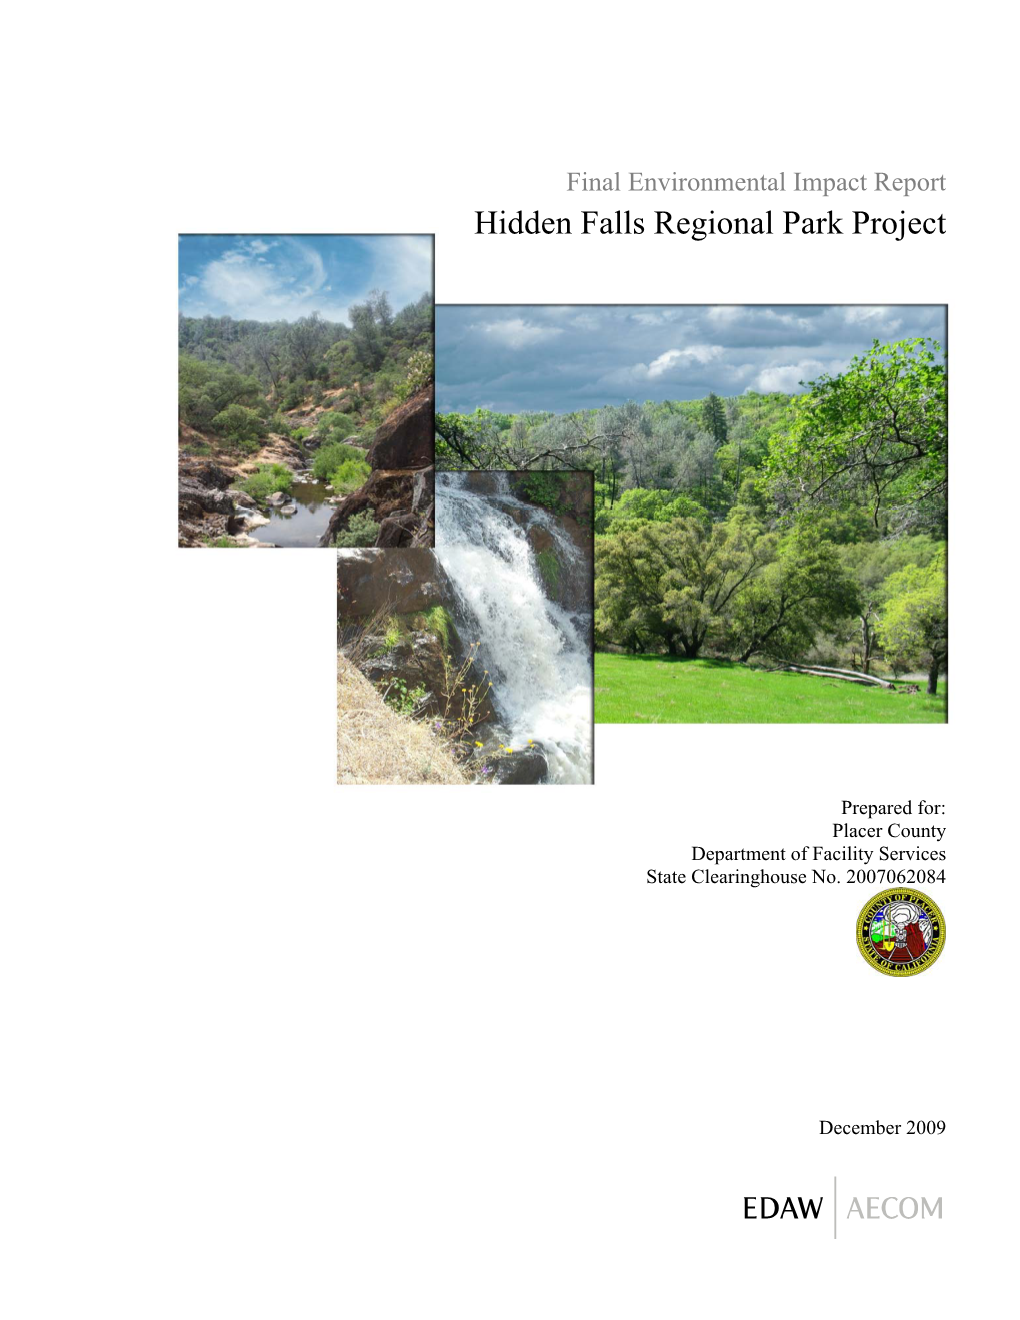 Hidden Falls Regional Park Project